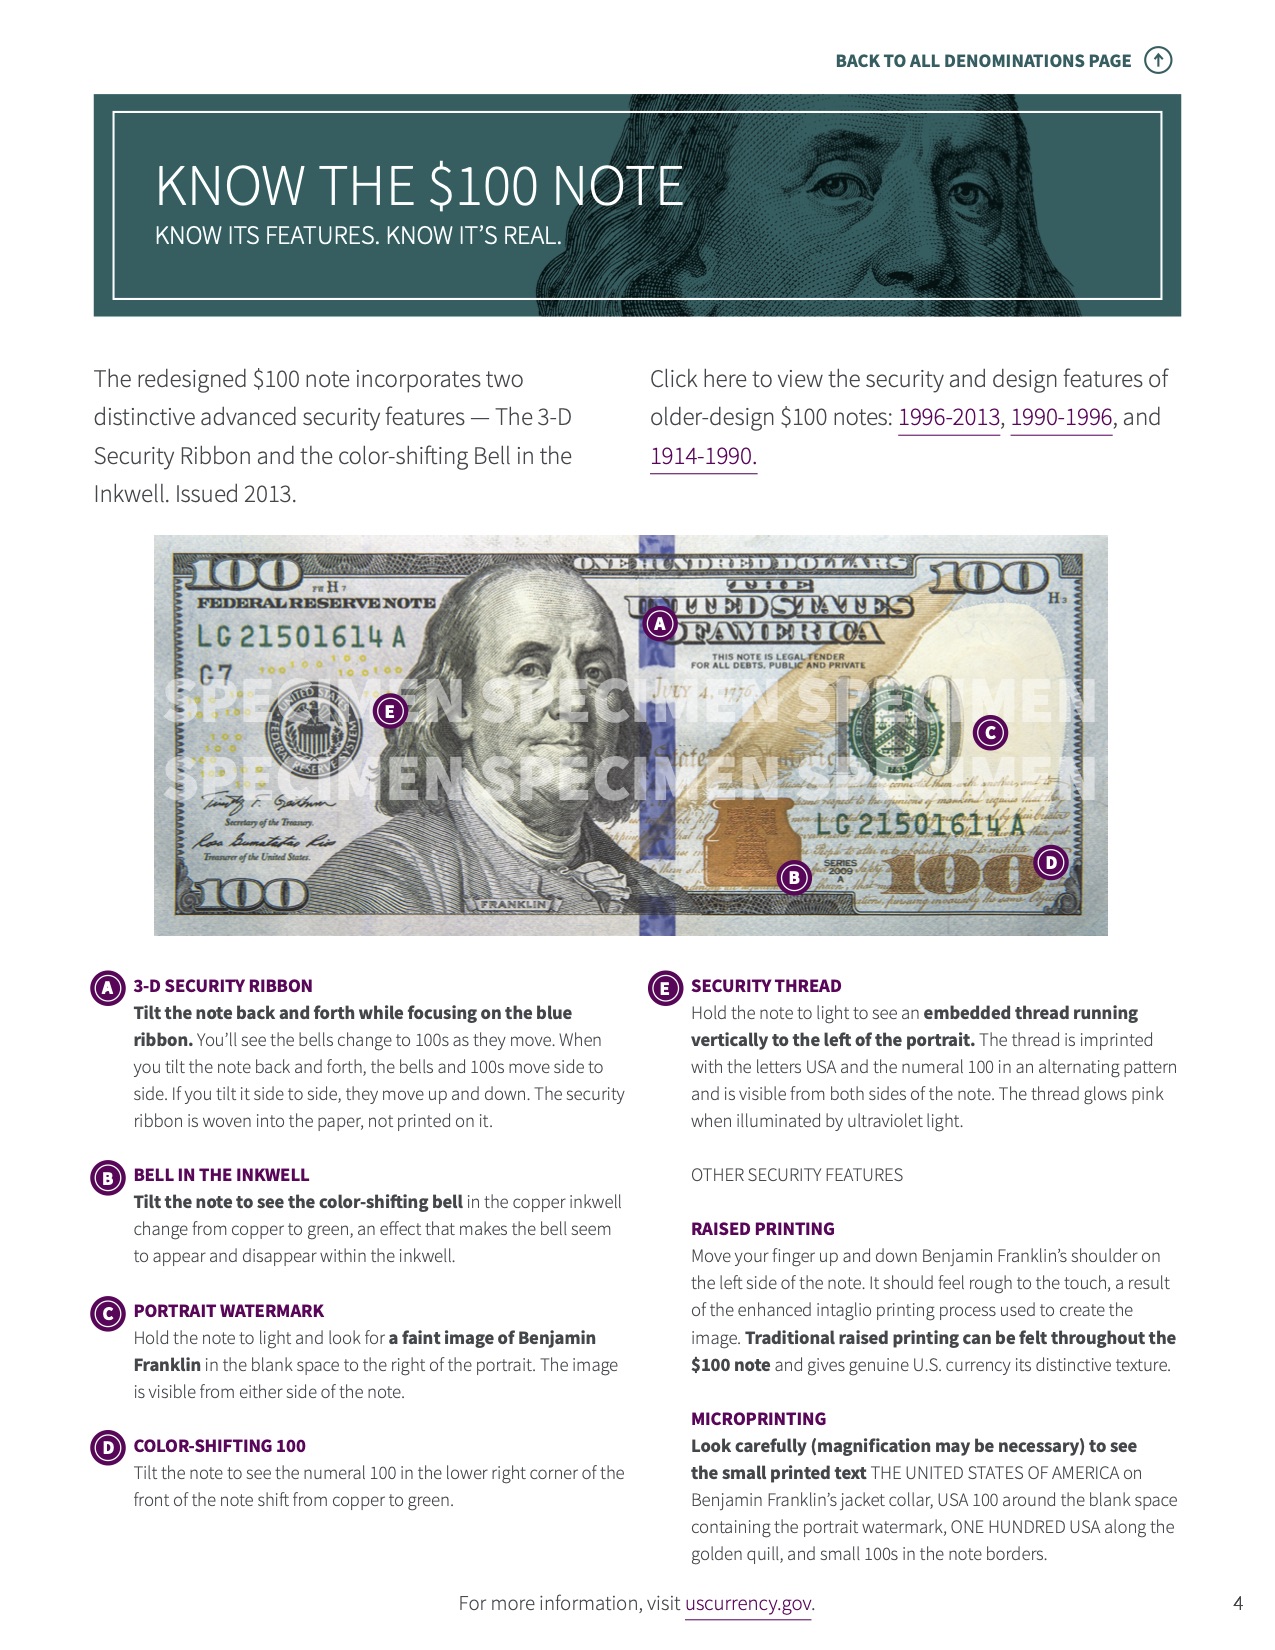 Una imagen de la página 'Conozca el billete de $100' en la Caja De Herramientas para Cajeros que detalla varias características de seguridad y diseño de los billetes de $100 de la Reserva Federal